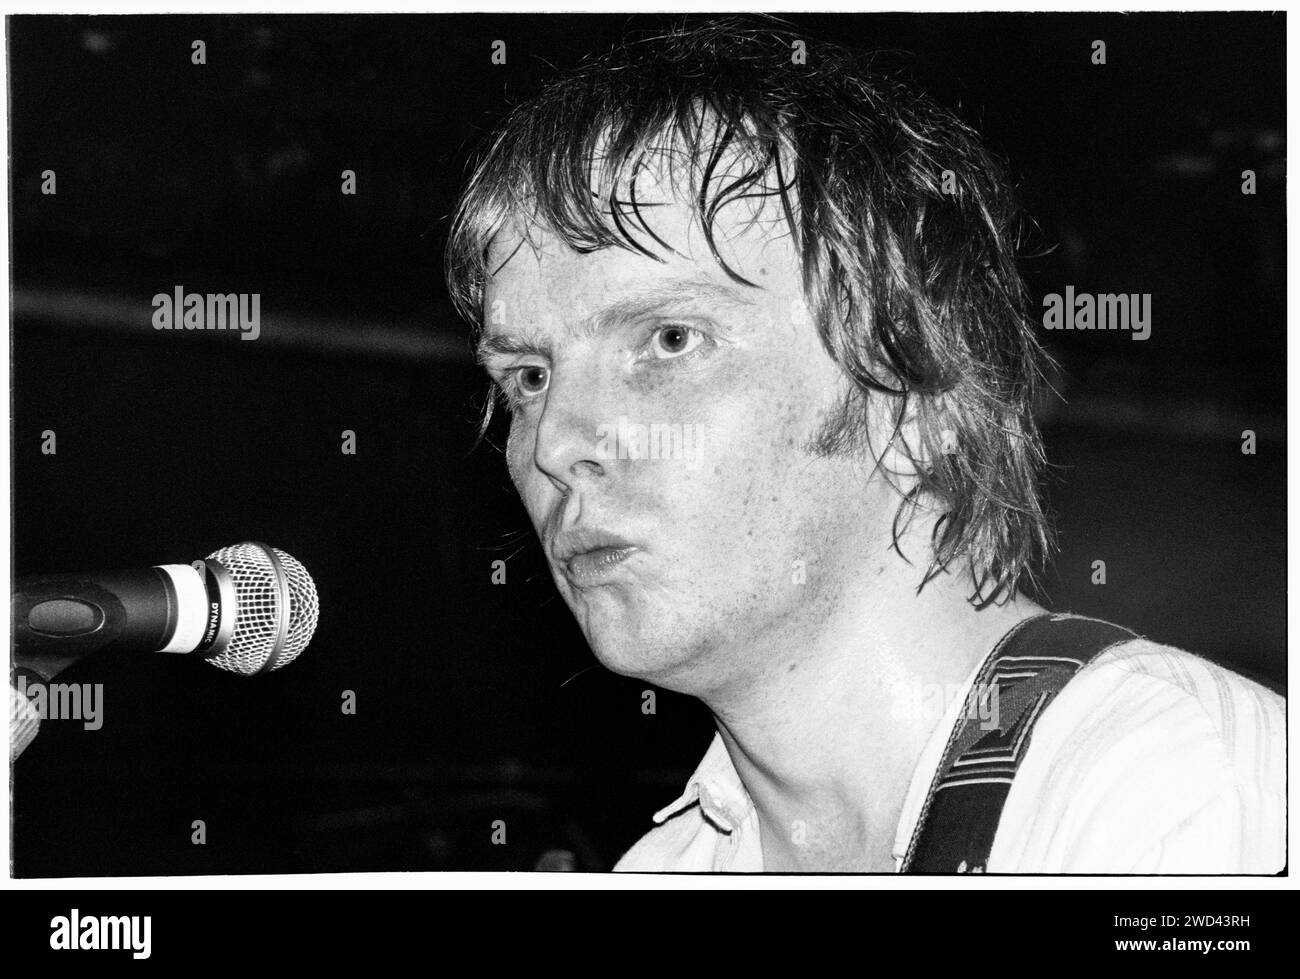 Luke Haines des Auters joue en live au Bristol Bierkeller le 23 mai 1994. Photo : Rob Watkins. INFO : The auteurs, un groupe de rock alternatif britannique dirigé par Luke Haines, a émergé dans les années 90 avec leur son sophistiqué et lettré. Des albums comme 'New Wave' et 'After Murder Park' ont présenté les chansons pointues de Haines, contribuant aux scènes indie et Britpop de l'époque. Banque D'Images